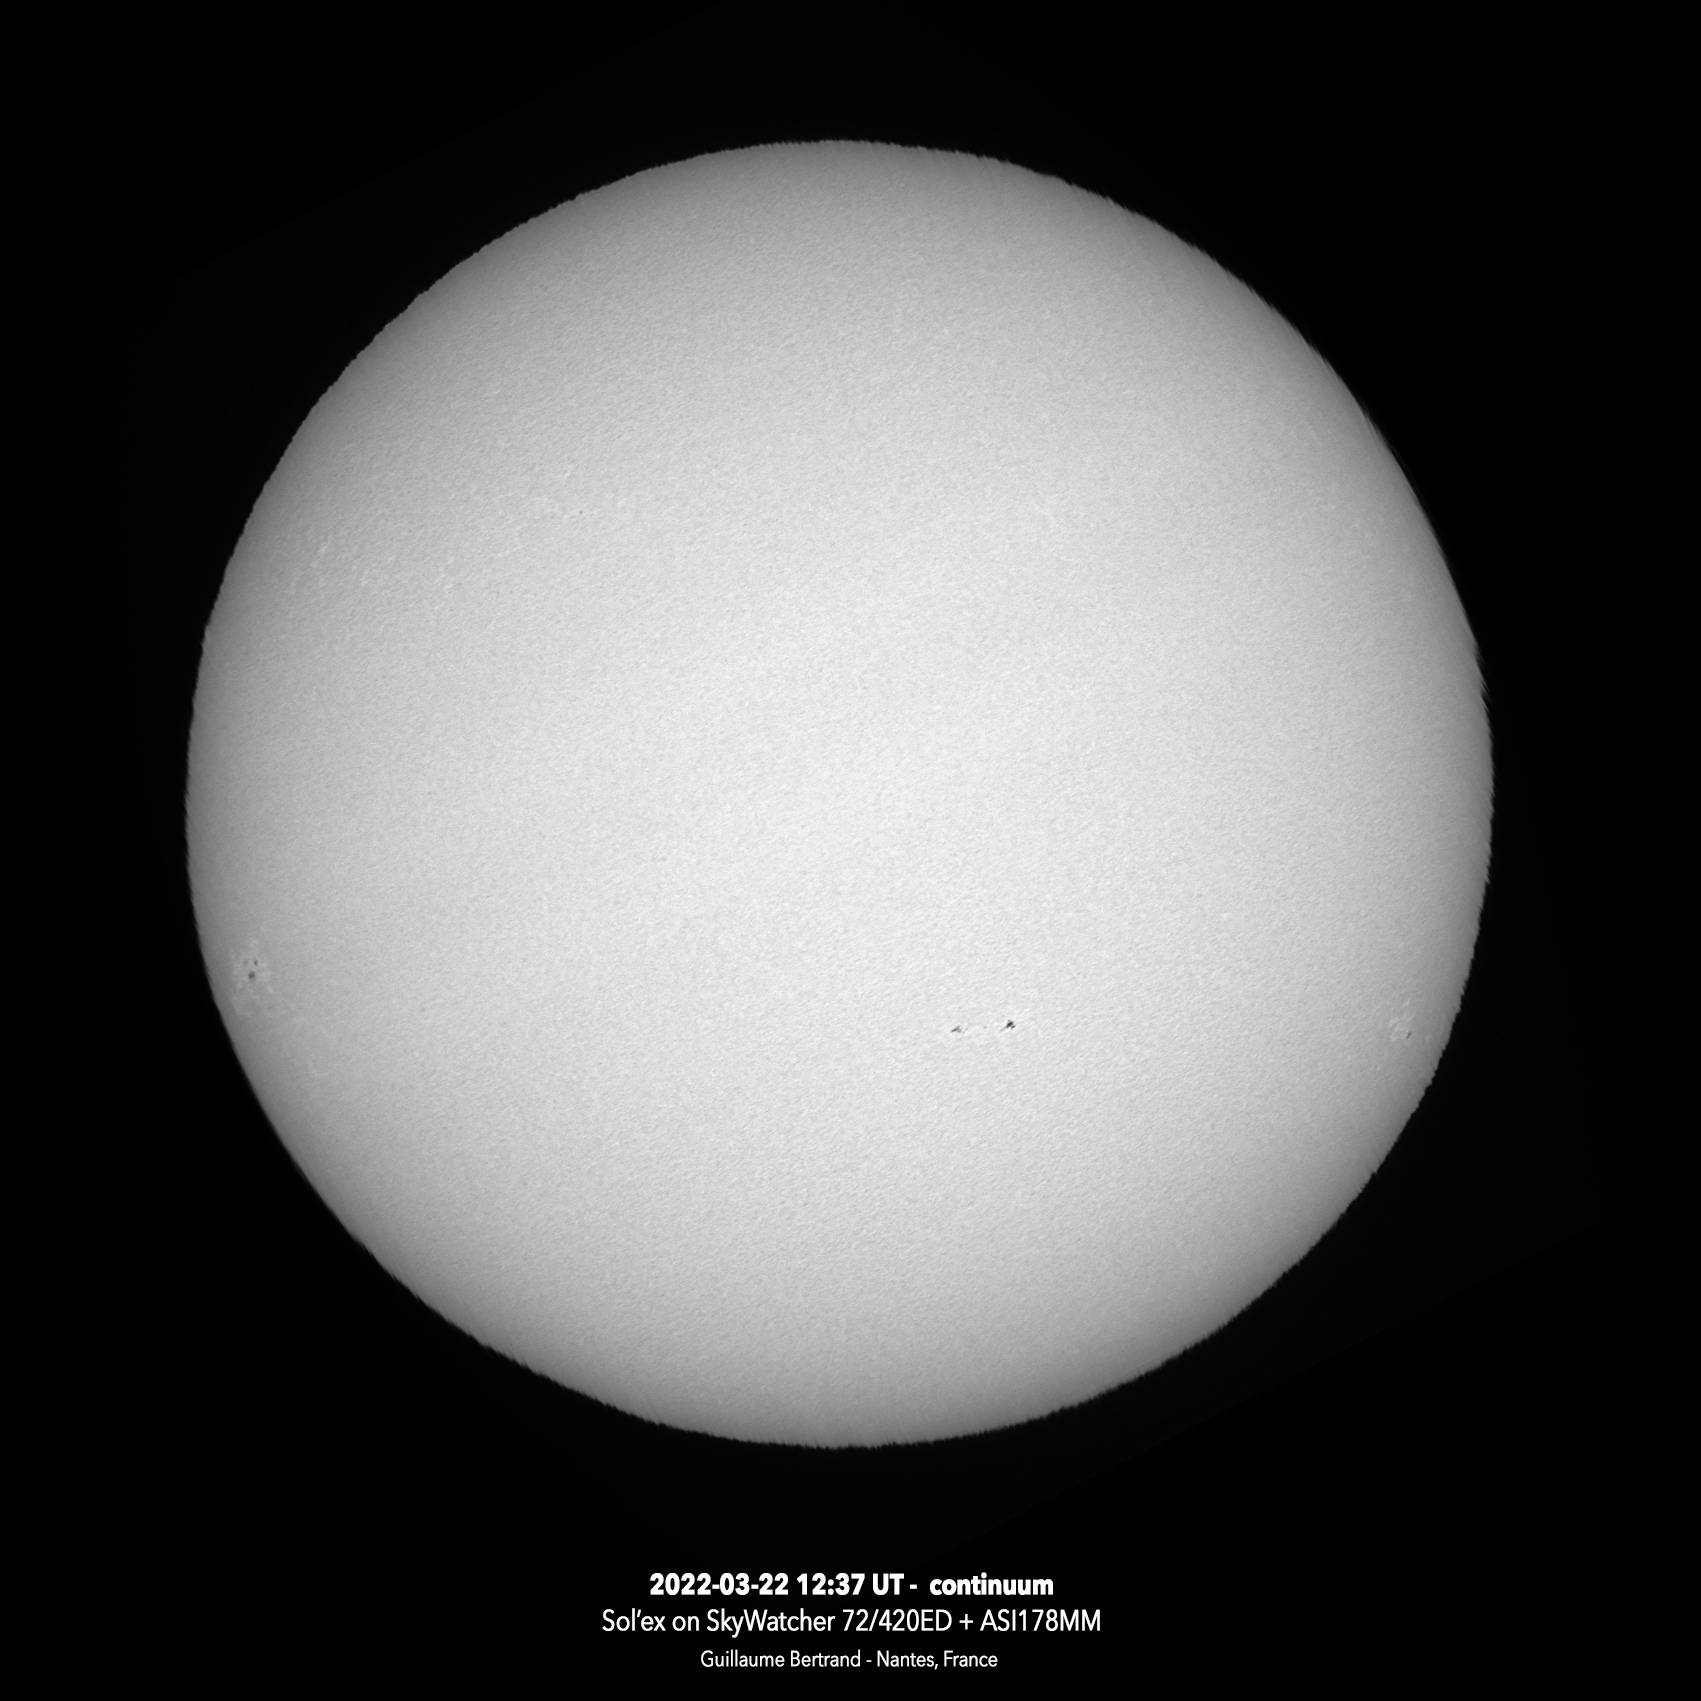 sun-20220322-12_37_continuum_nb.jpg.e78a8b88cb1beee1329c32d4998e1753.jpg